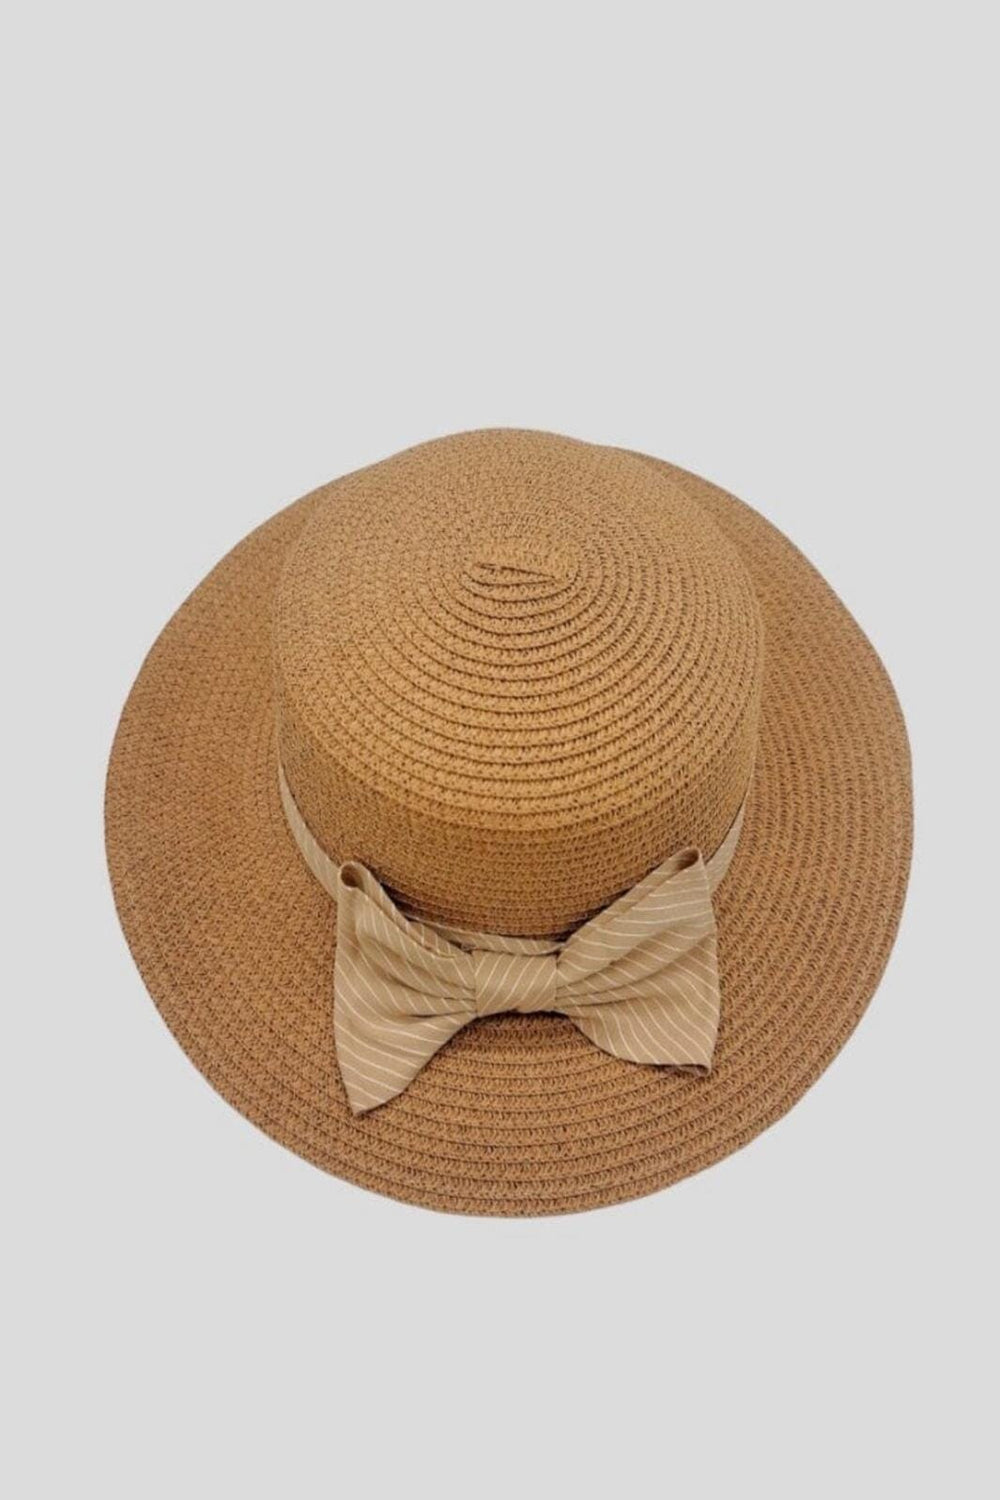 Anobel Copenhagen - Straw Hat With Striped Bow Tie 3cp2085 - Terracotta Hatte 